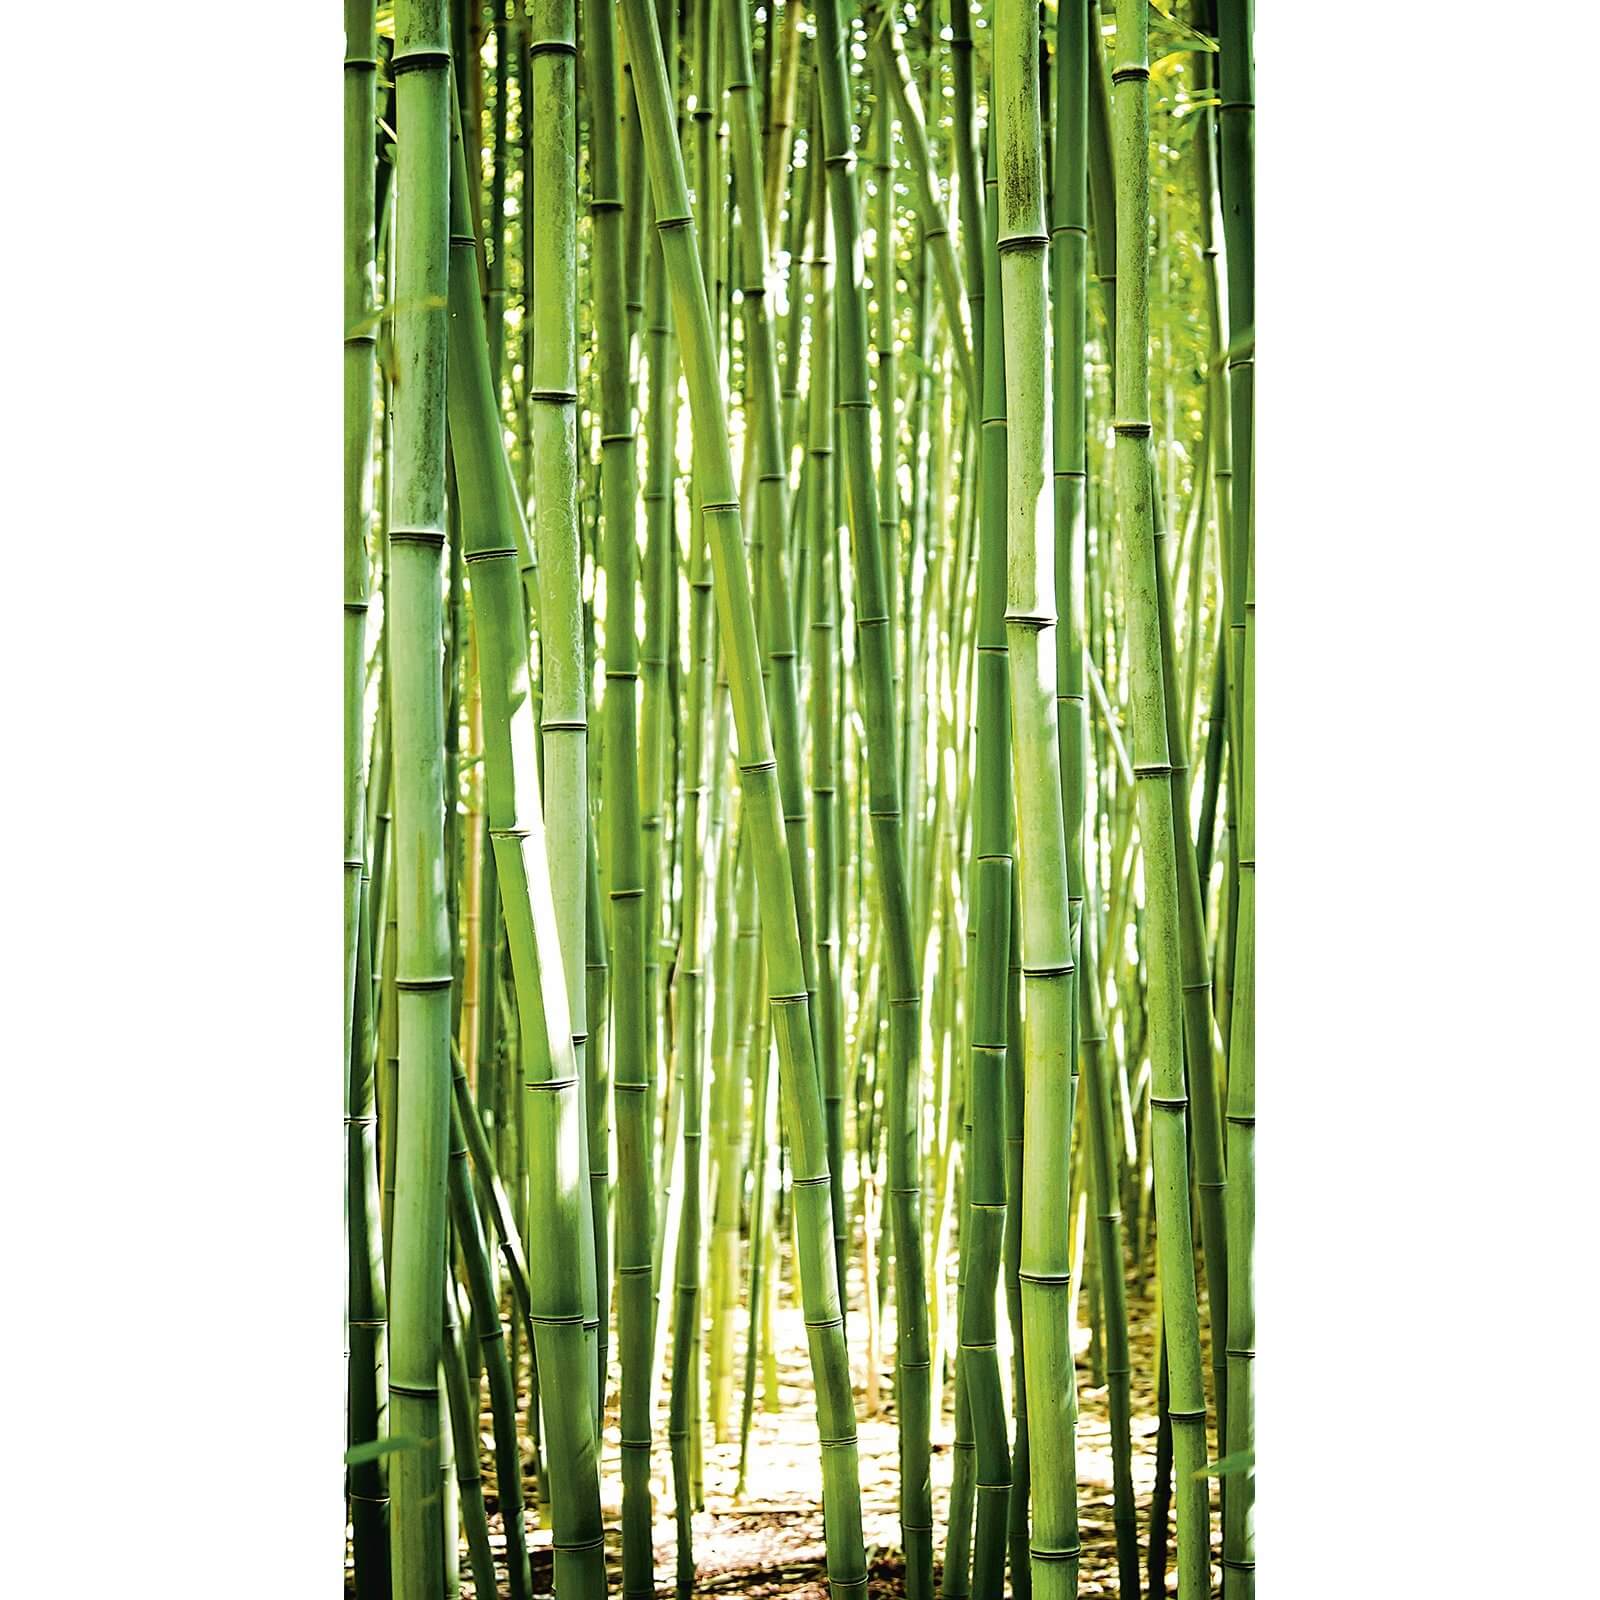 Grandeco Bamboo Green Digital Wallpaper Mural